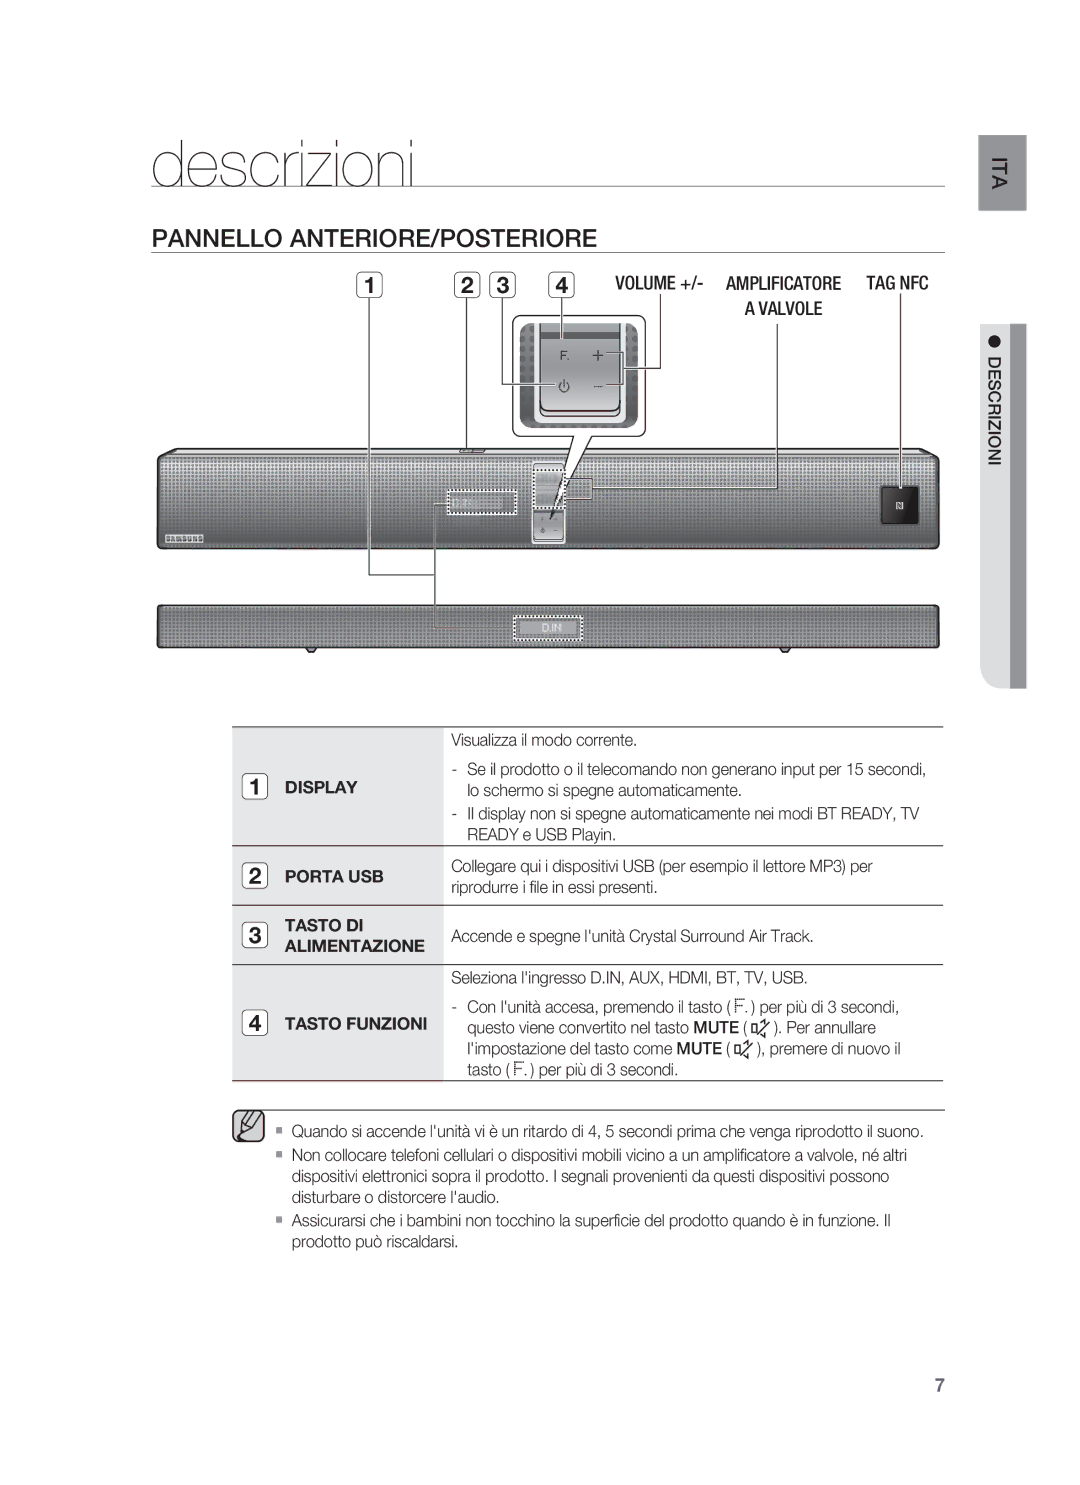 Samsung HW-F850/ZF manual Descrizioni, Pannello ANTERIORE/POSTERIORE 